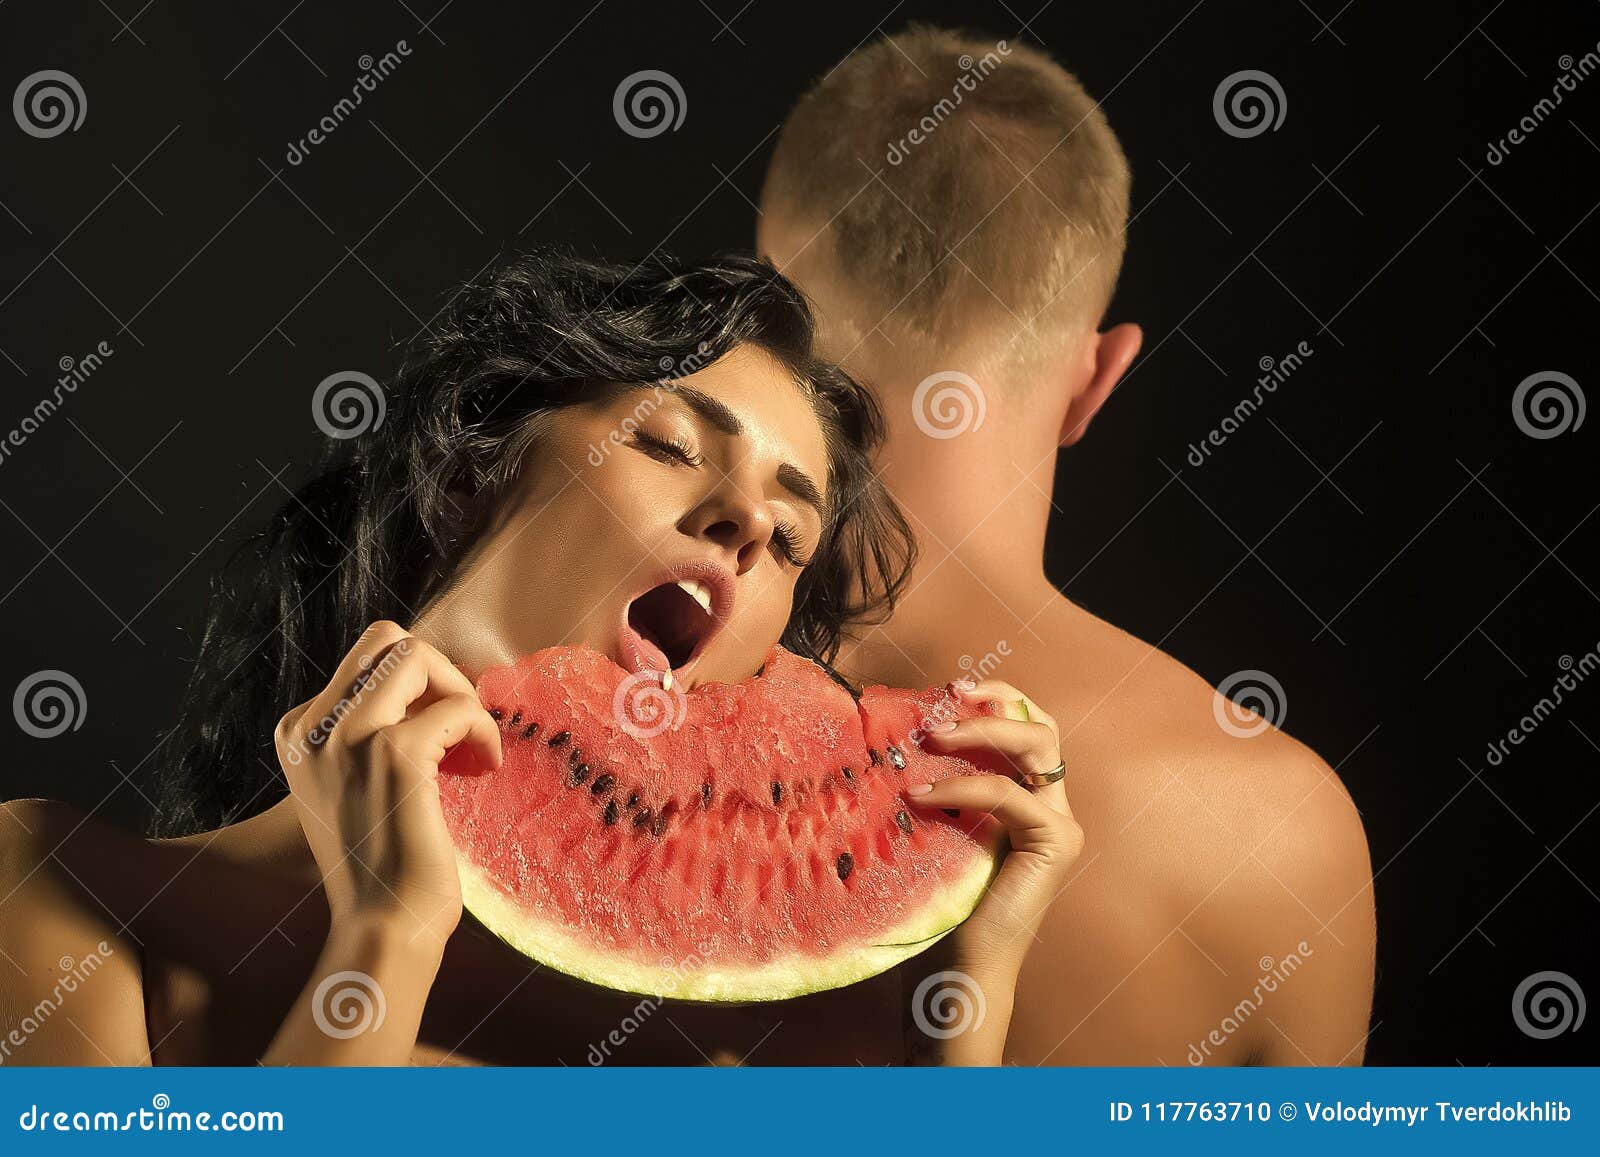 Body couple food erotic photography